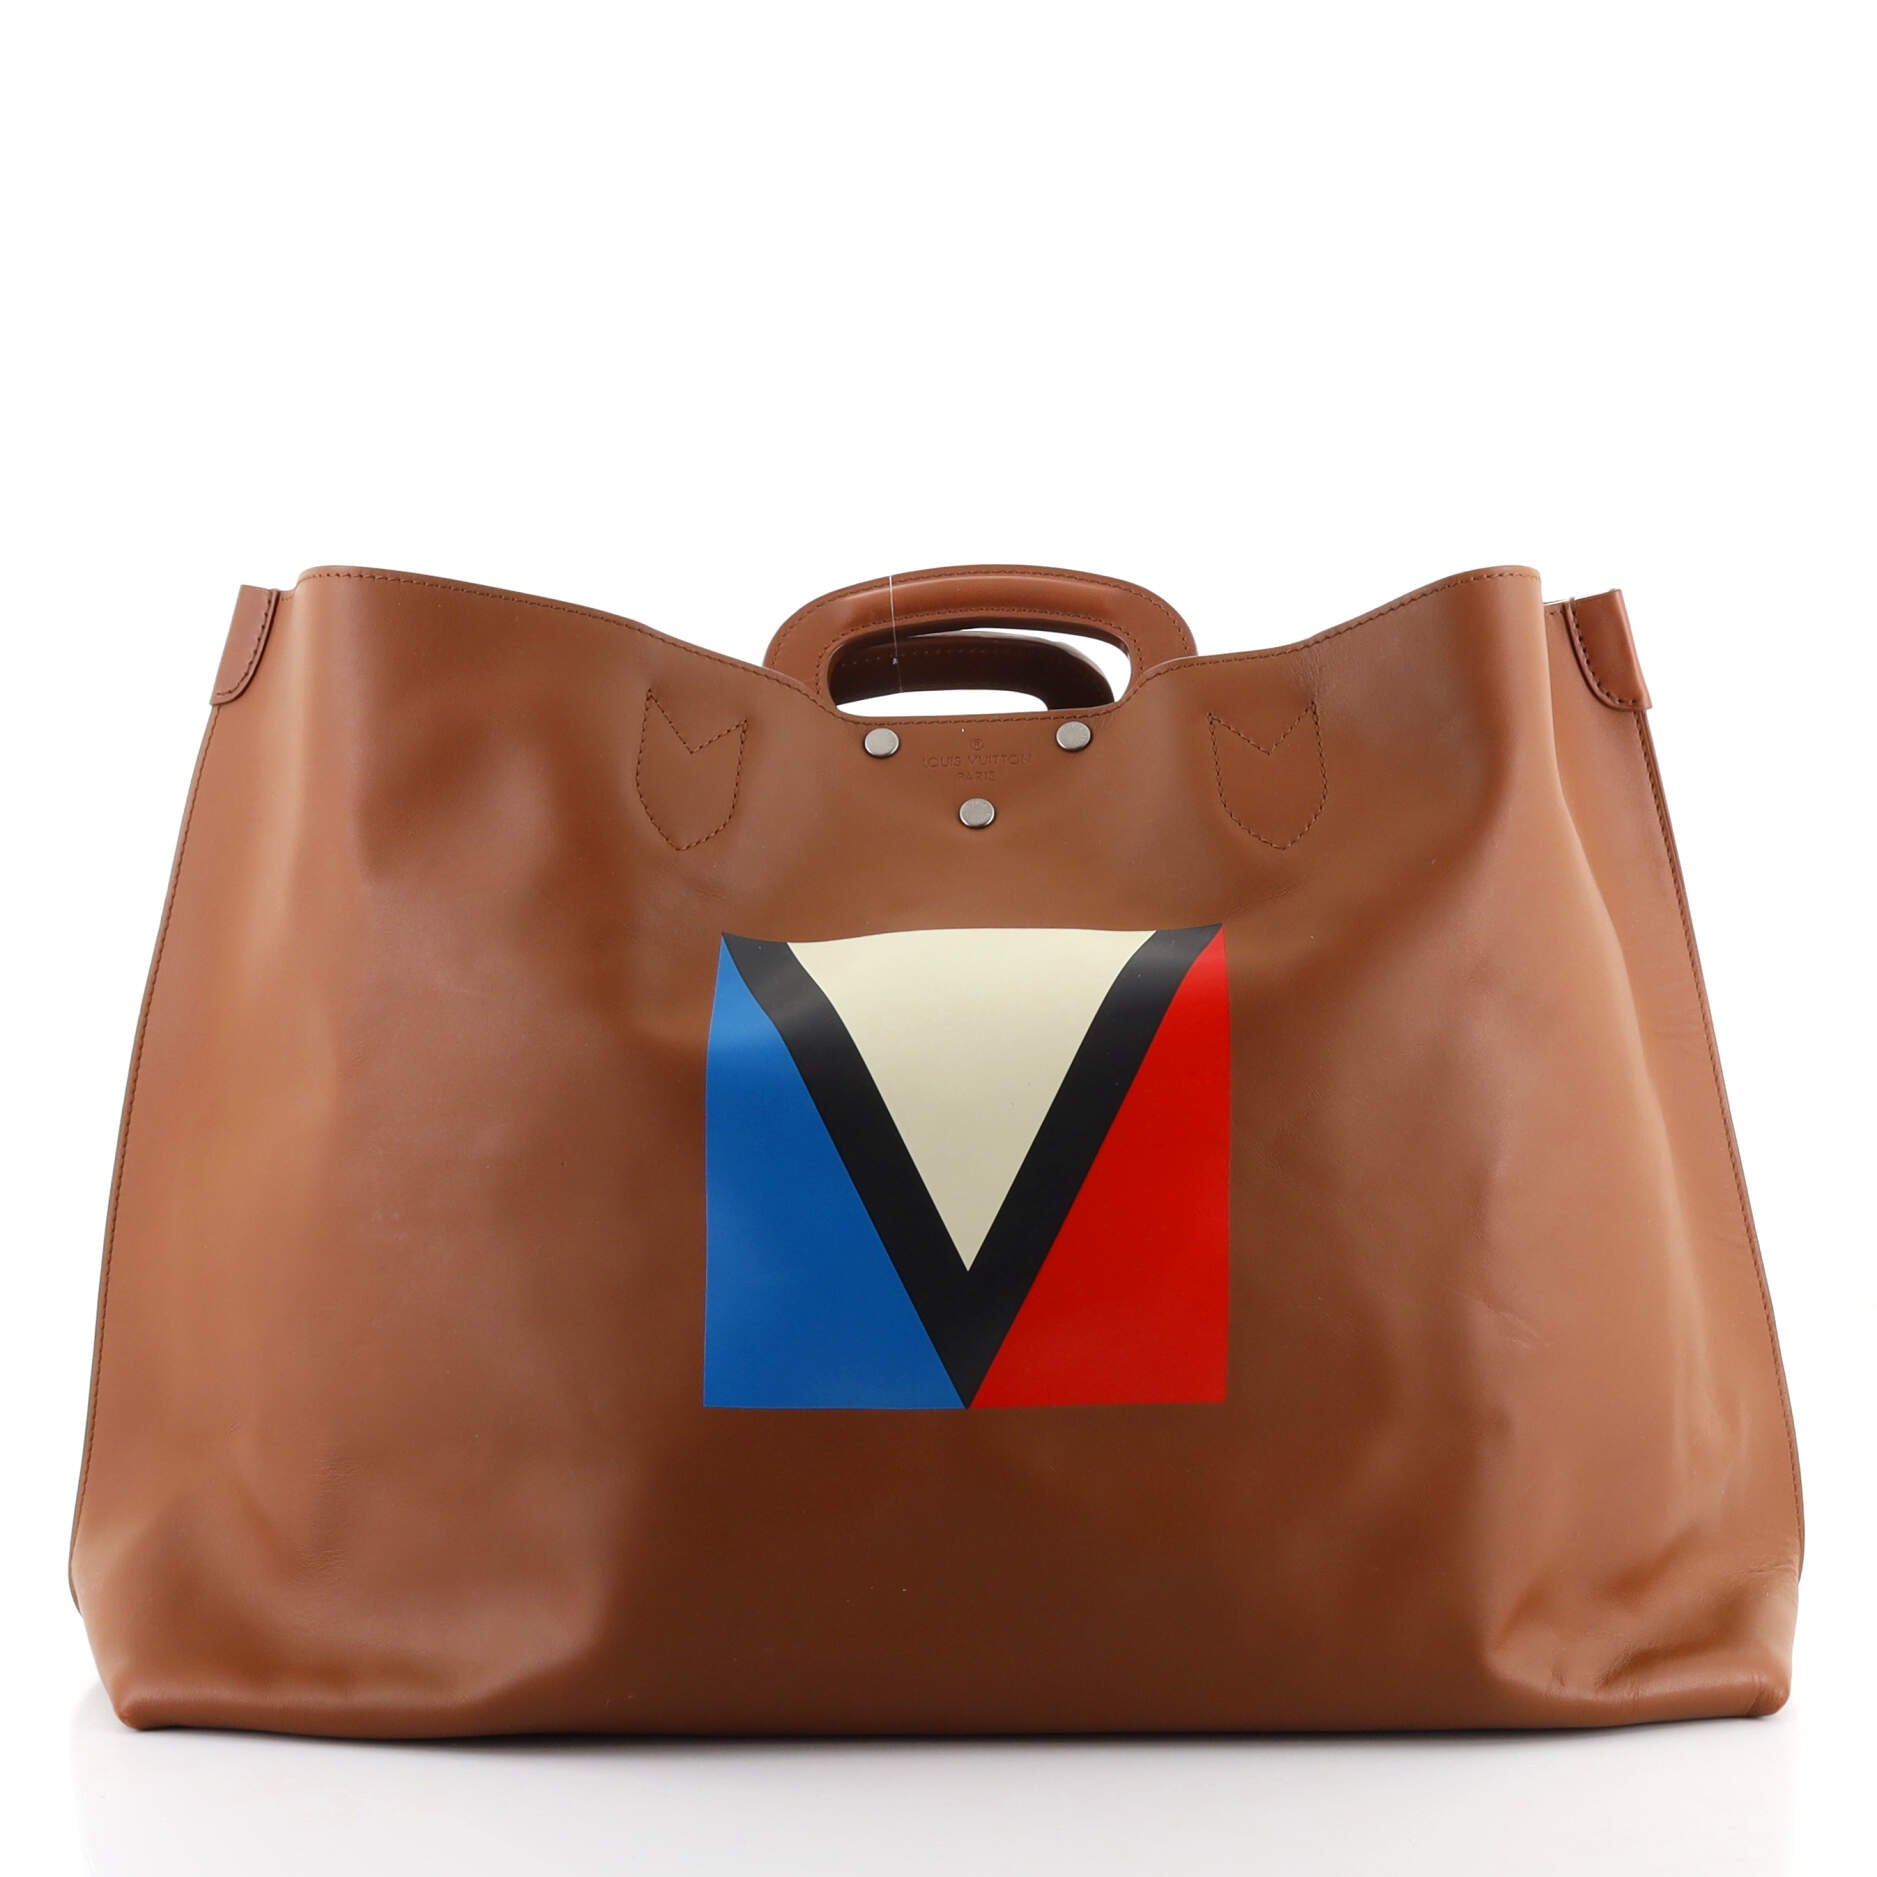 Louis Vuitton Nomade Leather Sac Plat in Dark Brown Tote Handbag